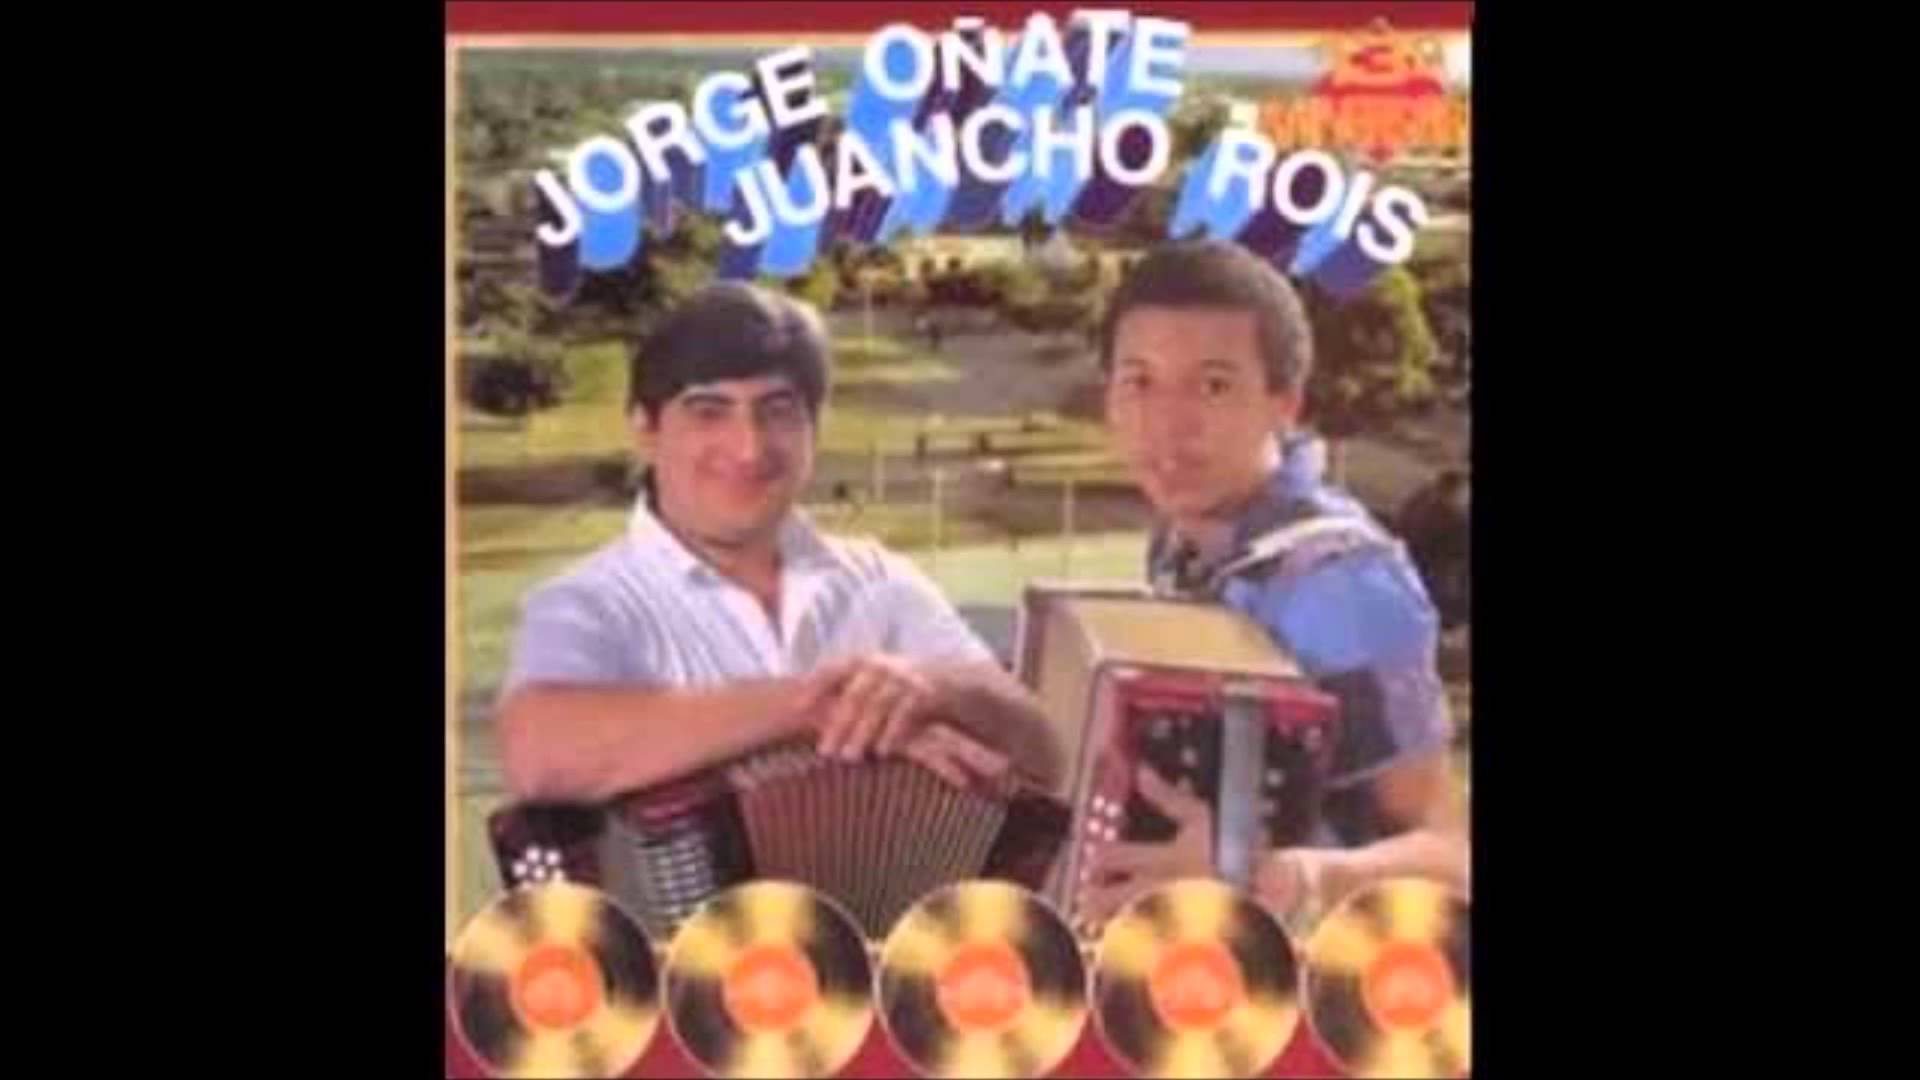 jorge oñate y juancho rois - 1983 - 13 aniversario